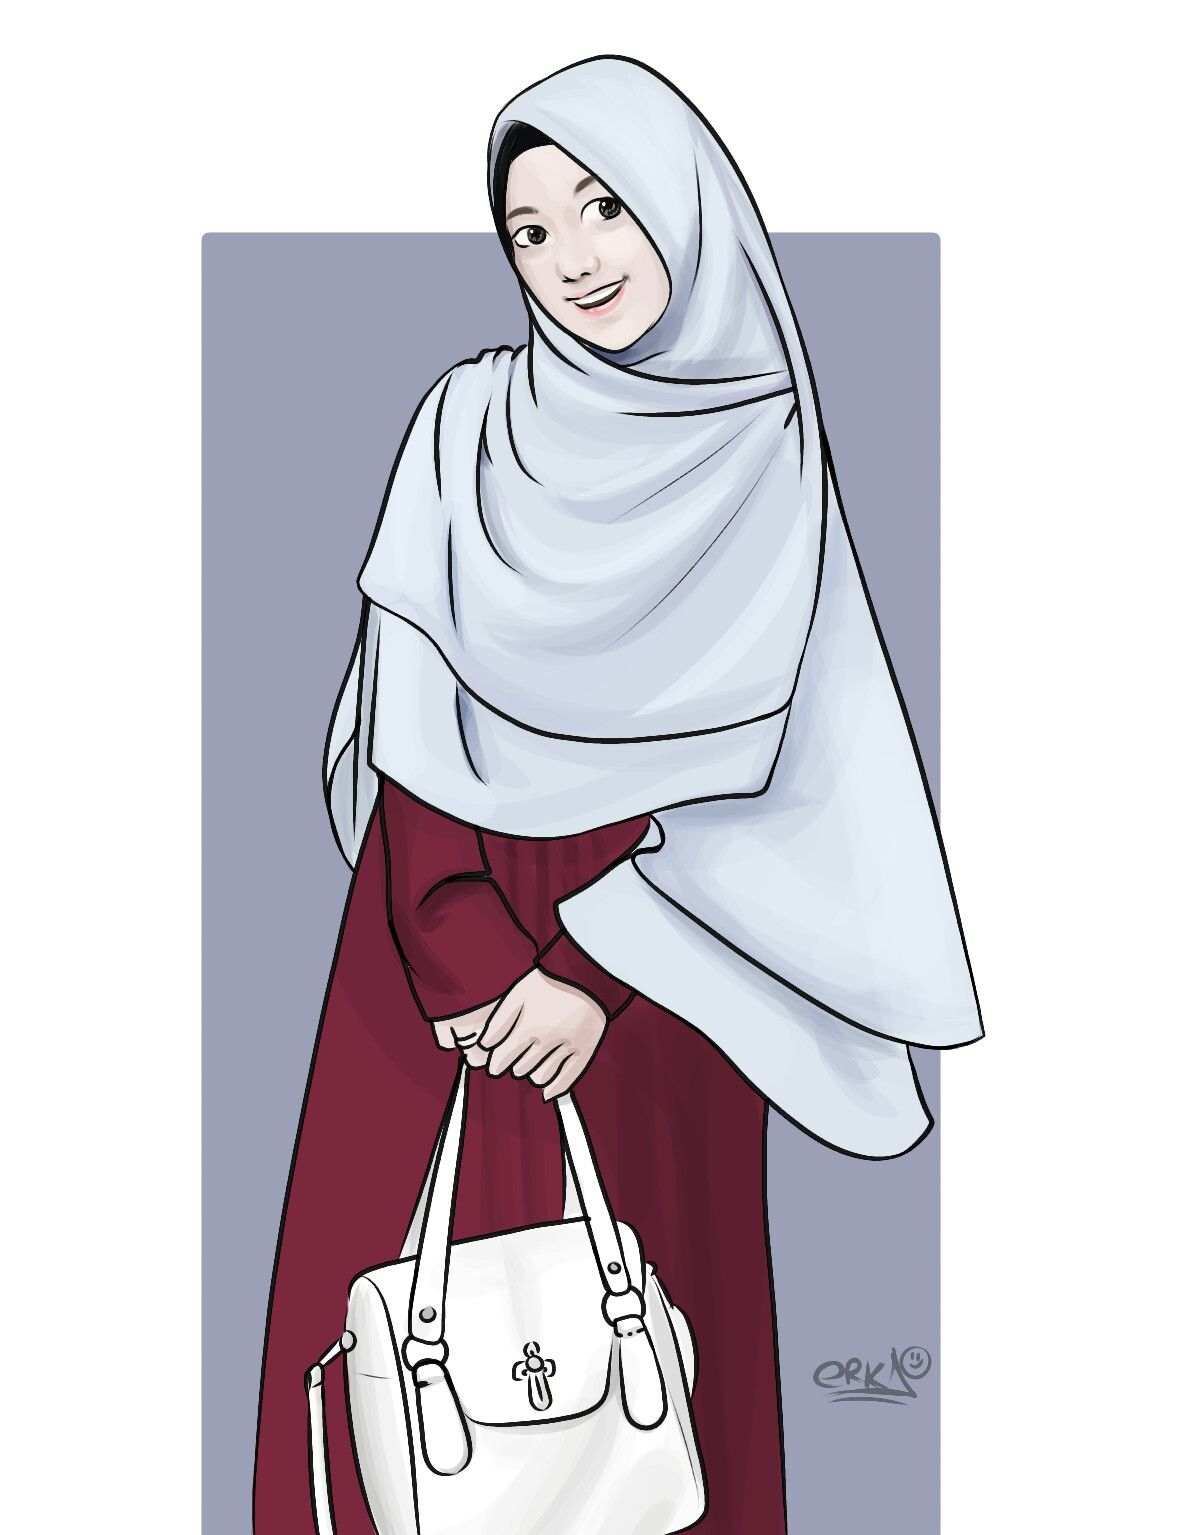 نقاشی در مورد حجاب